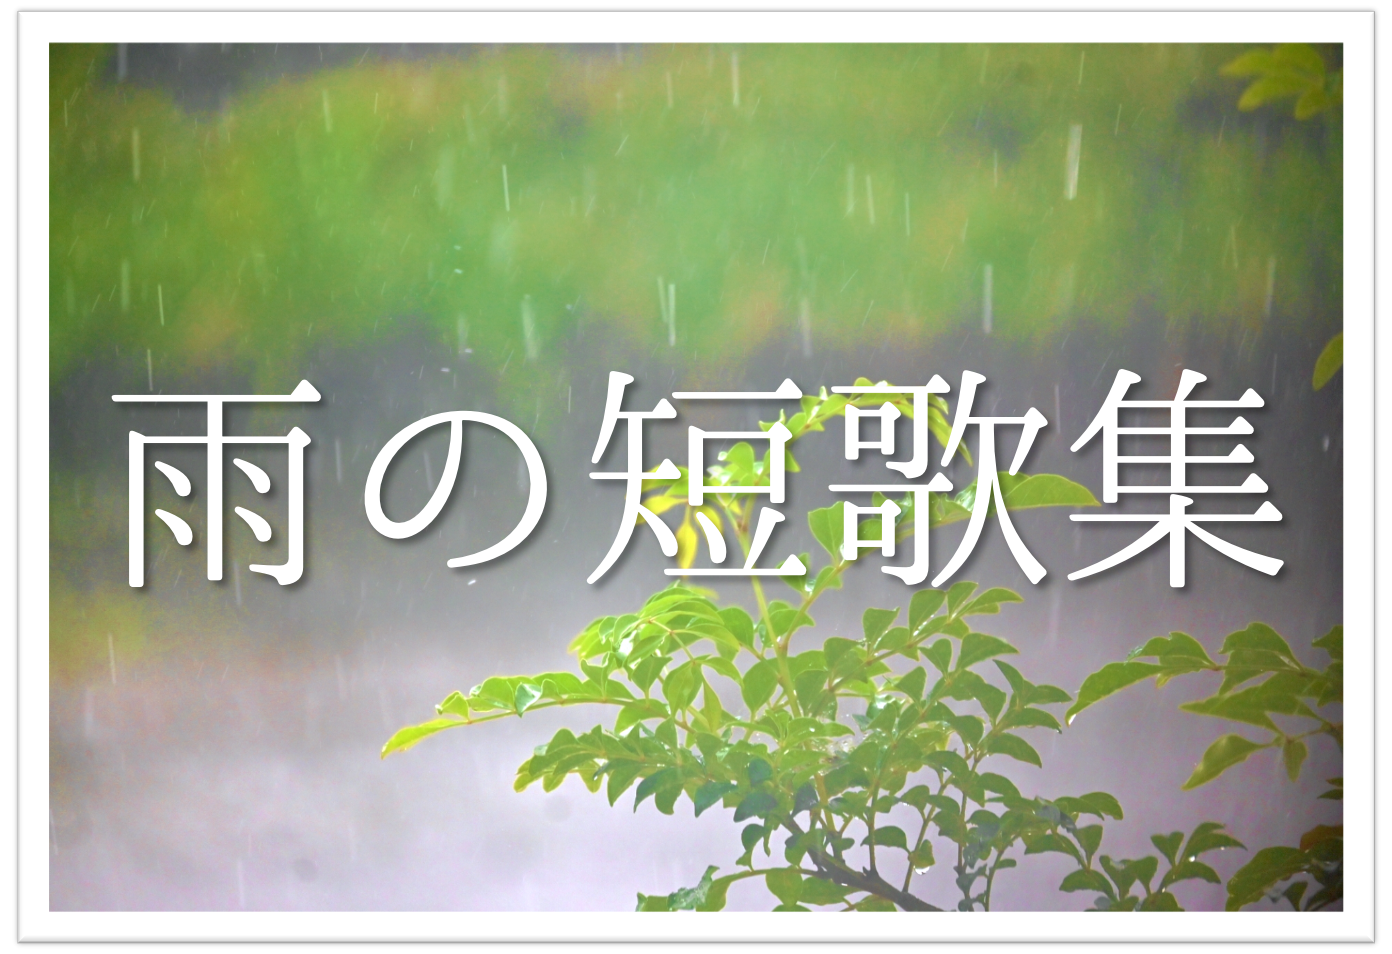 雨を題材にした短歌 選 知っておきたい 季語を含む有名短歌 素人短歌を紹介 短歌の教科書 短歌の作り方 有名短歌の解説サイト